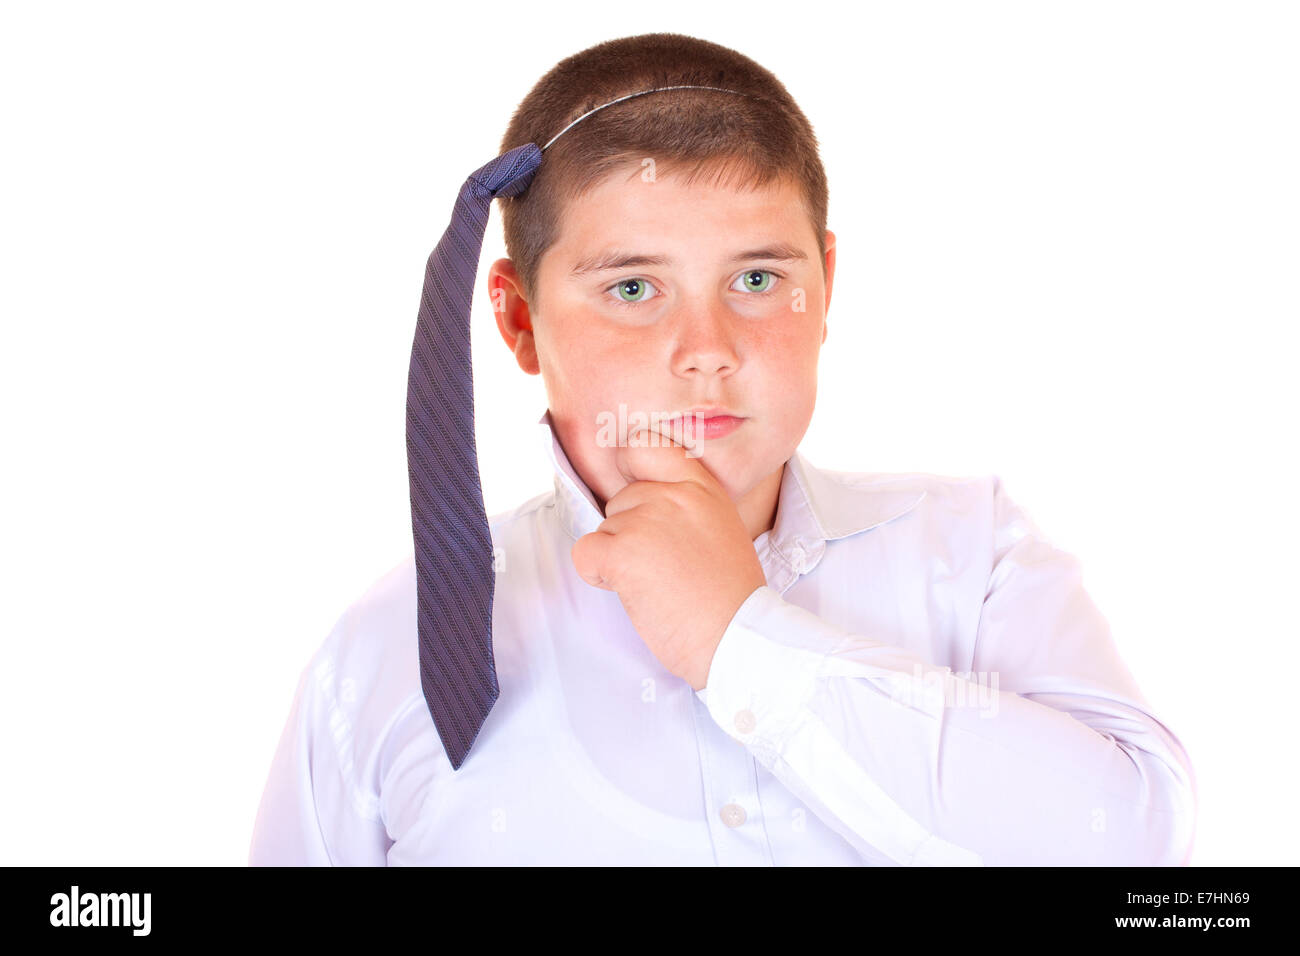 7 anno vecchio ragazzo caucasico in camicia e cravatta su sfondo bianco Foto Stock